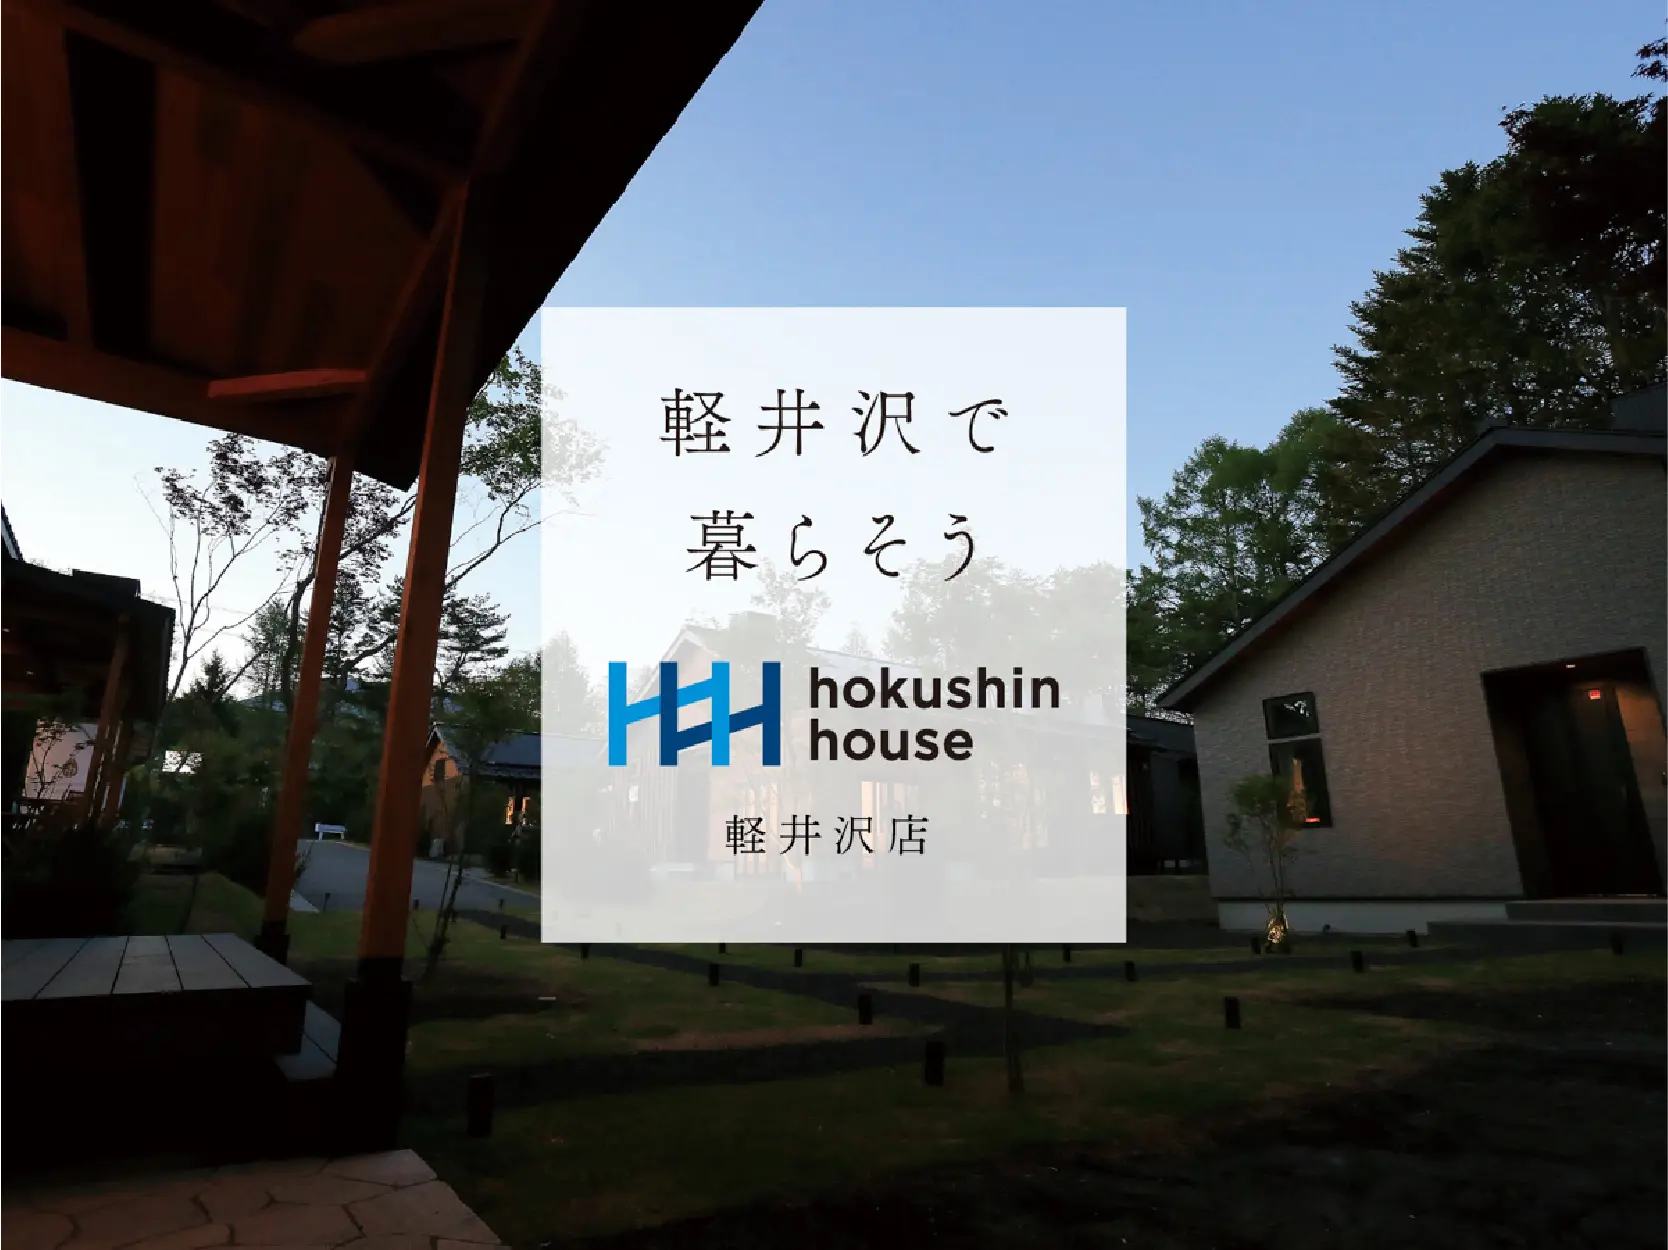 ホクシンハウスから「軽井沢暮らし」を応援するサイトができました